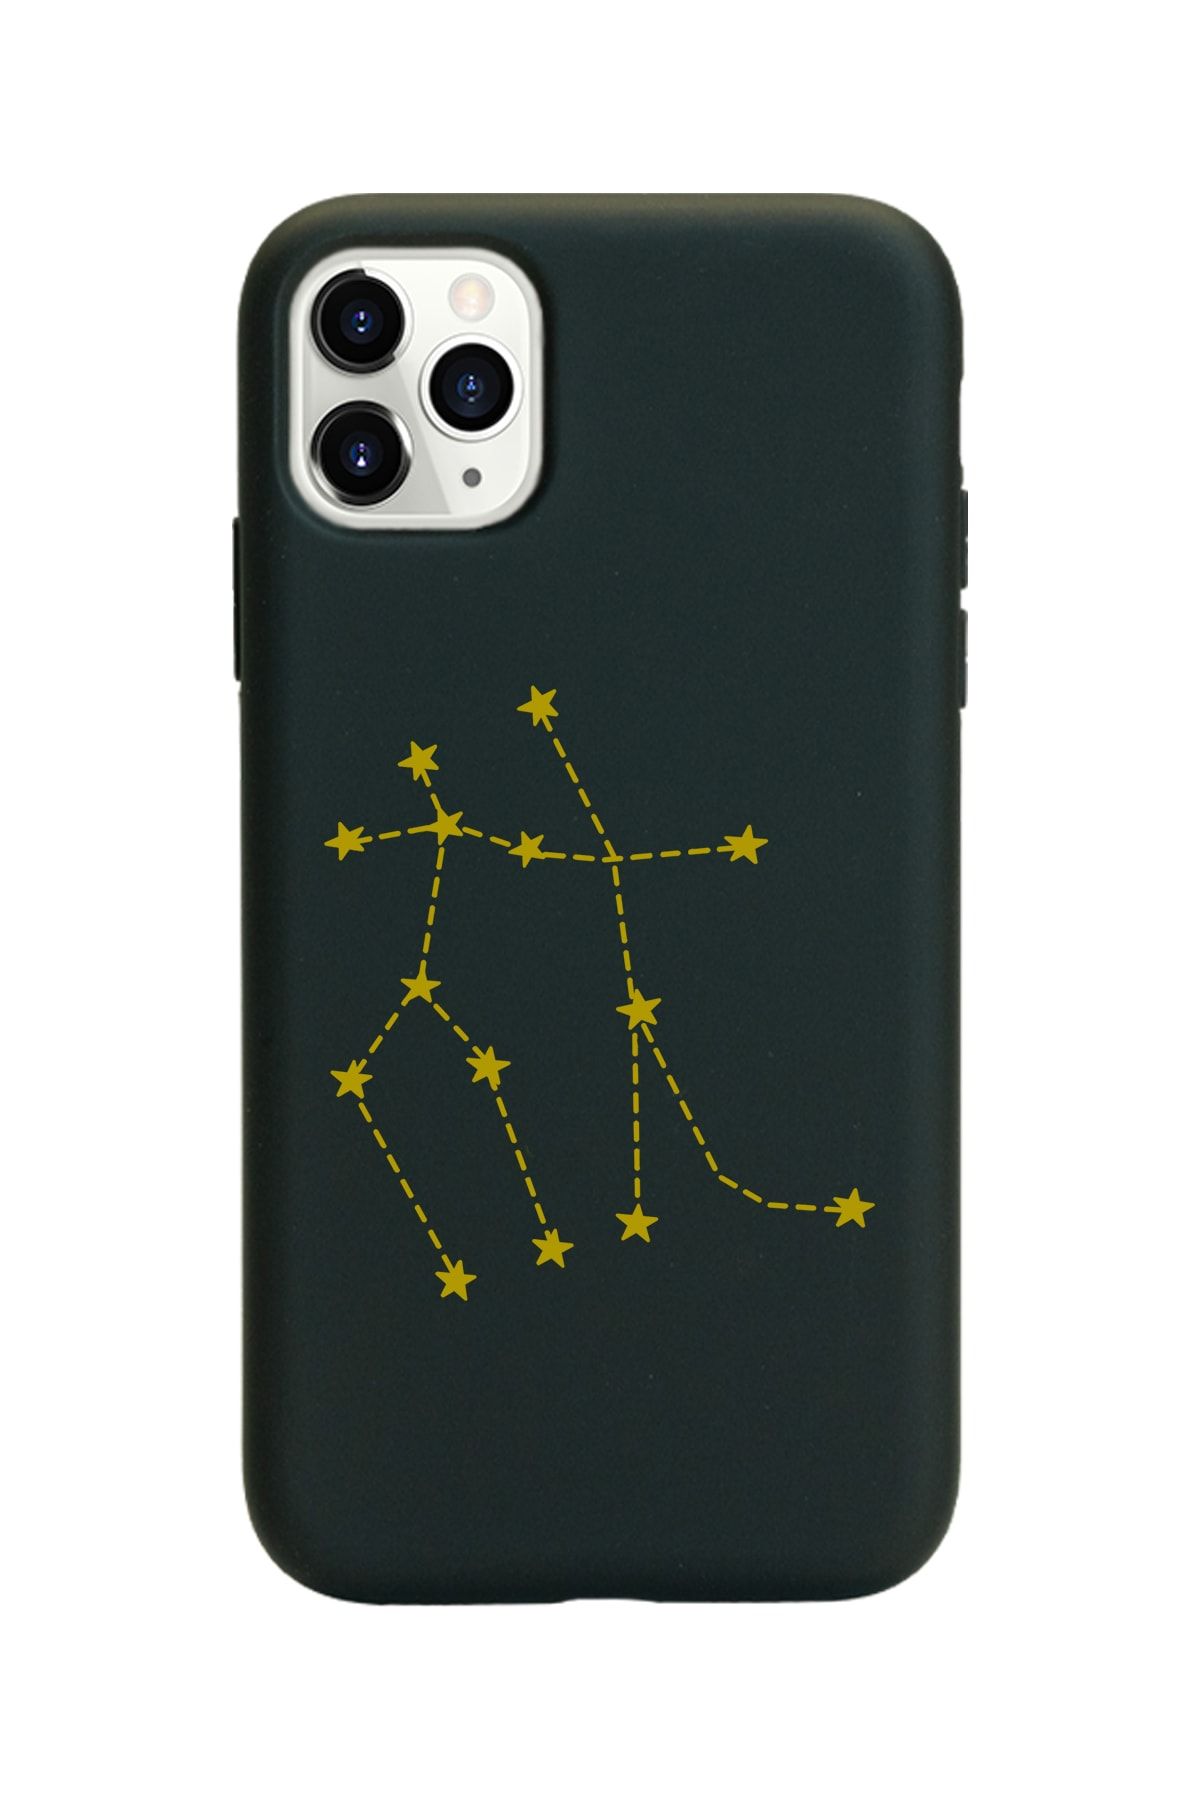 Spoyi Ikizler Burcu (gemeos) Yıldız Haritası Tasarımlı Iphone 11 Pro Max Kılıf